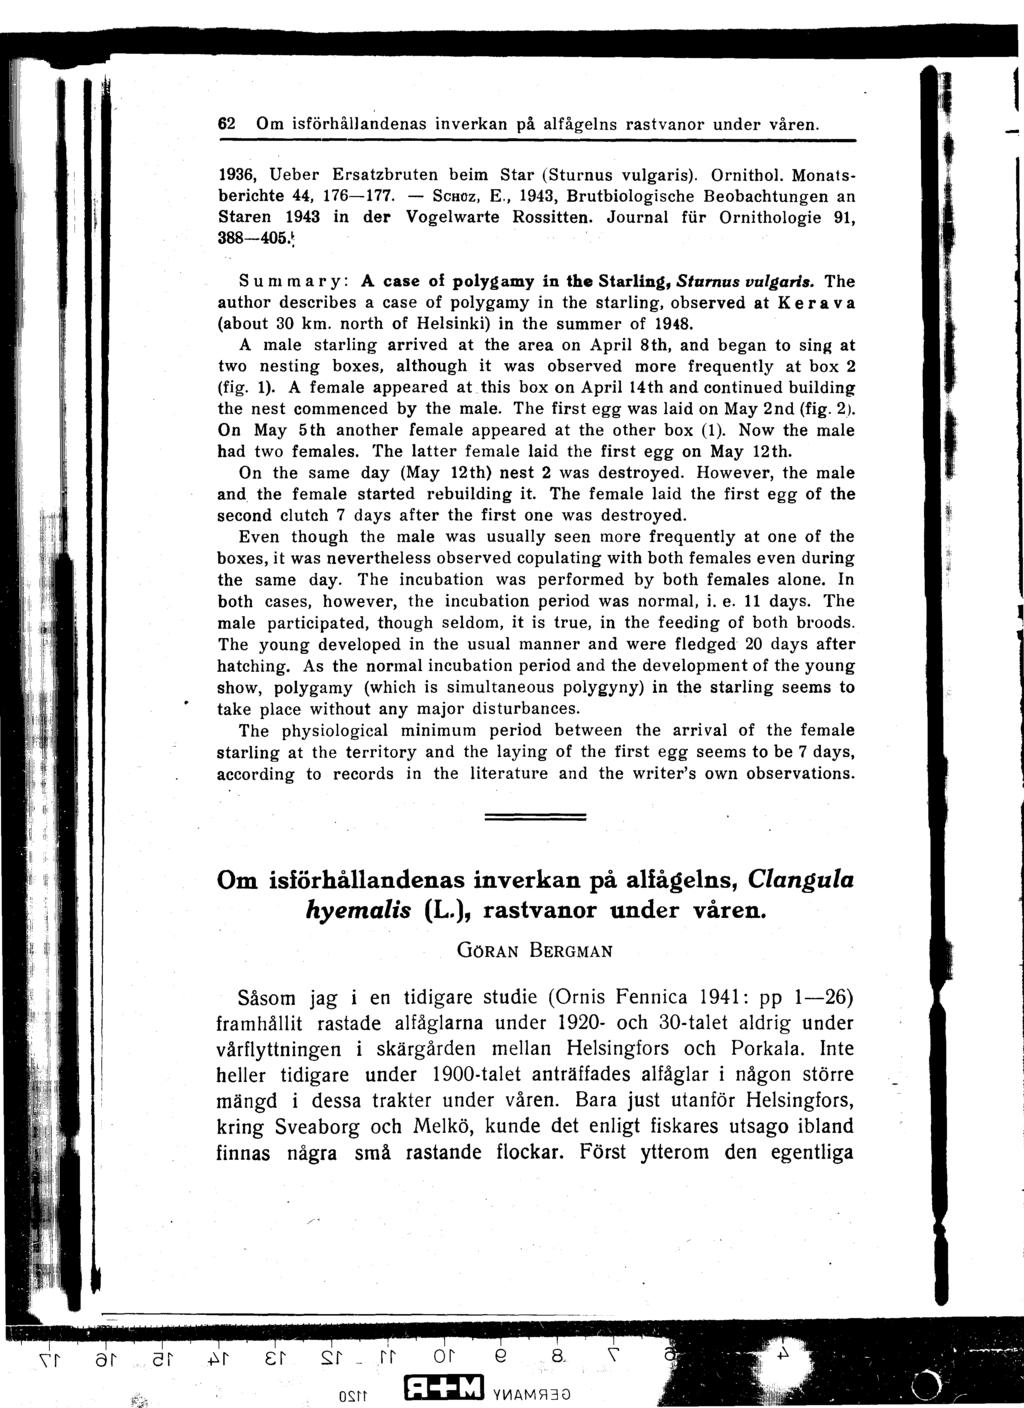 62 Om isförhållandenas inverkan på alfågelns rastvanor under våren. 1936, Ueber Ersatzbruten beim Star (Sturnus vulgaris). Ornithol. Monatsberichte 44, 176-177. - SCHOZ, E.